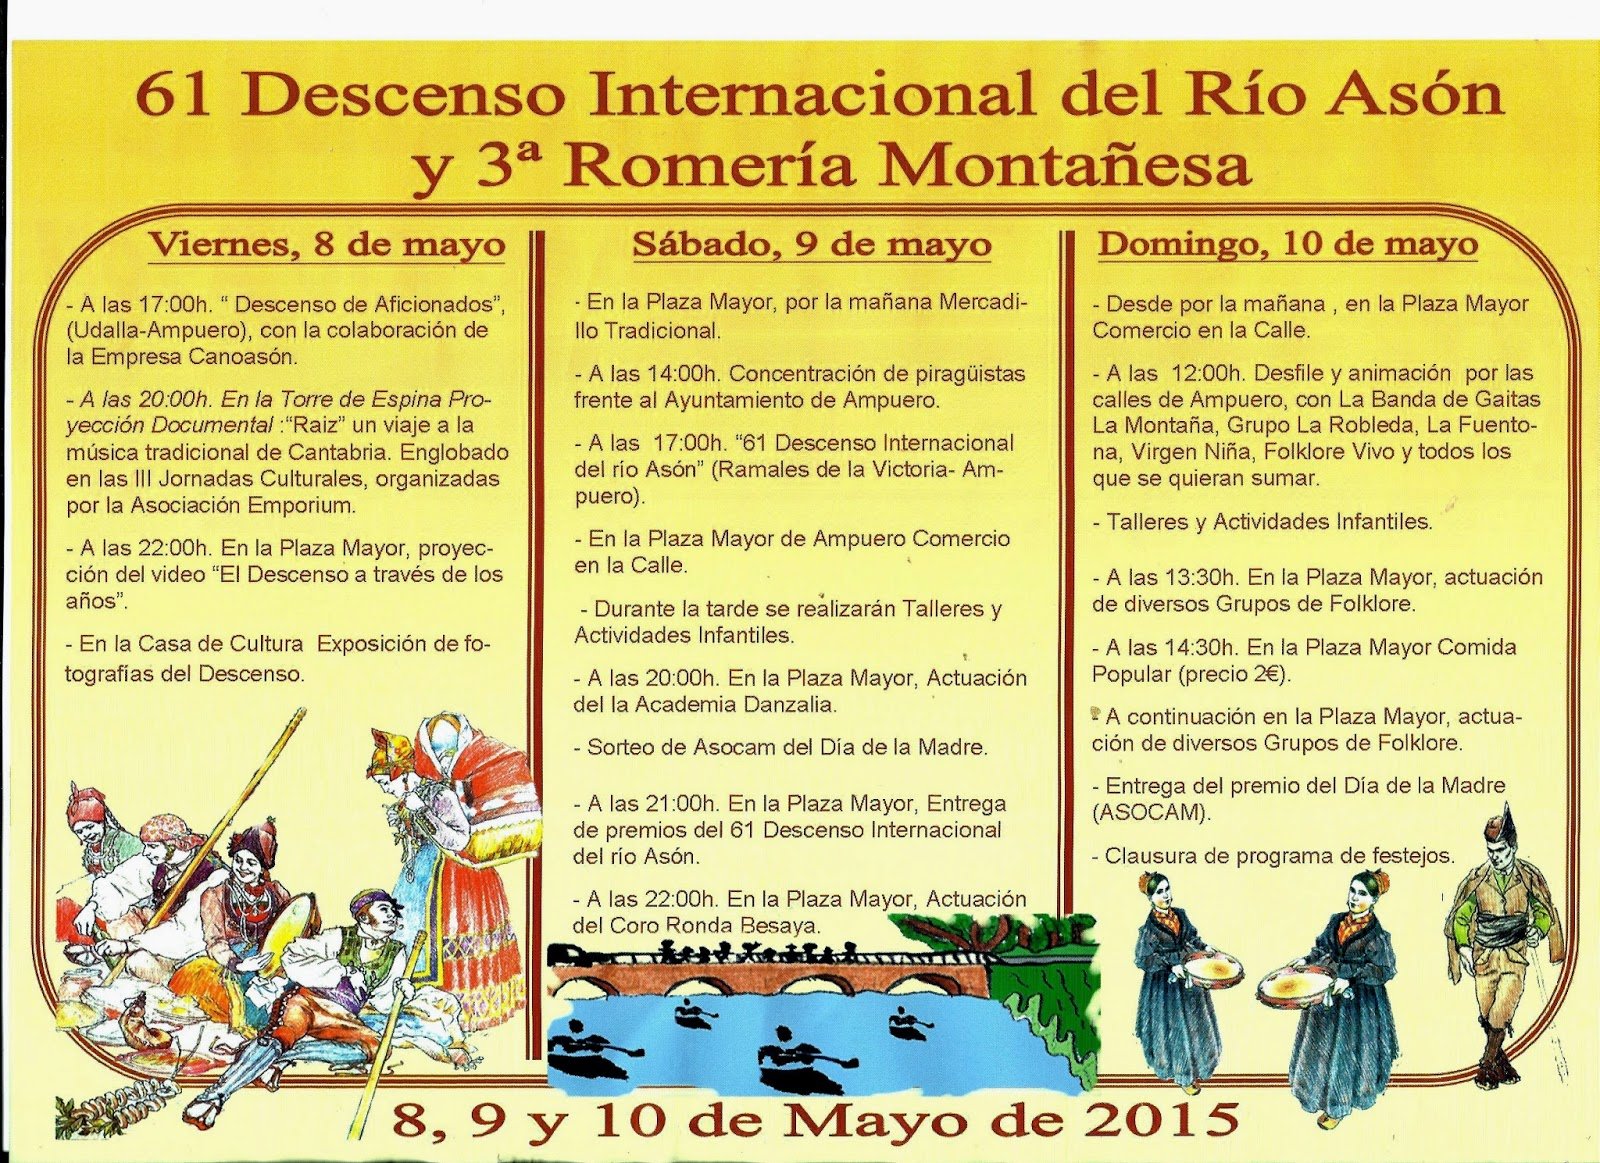 Fiestas del Descenso del asón y romería montañesa en Ampuero